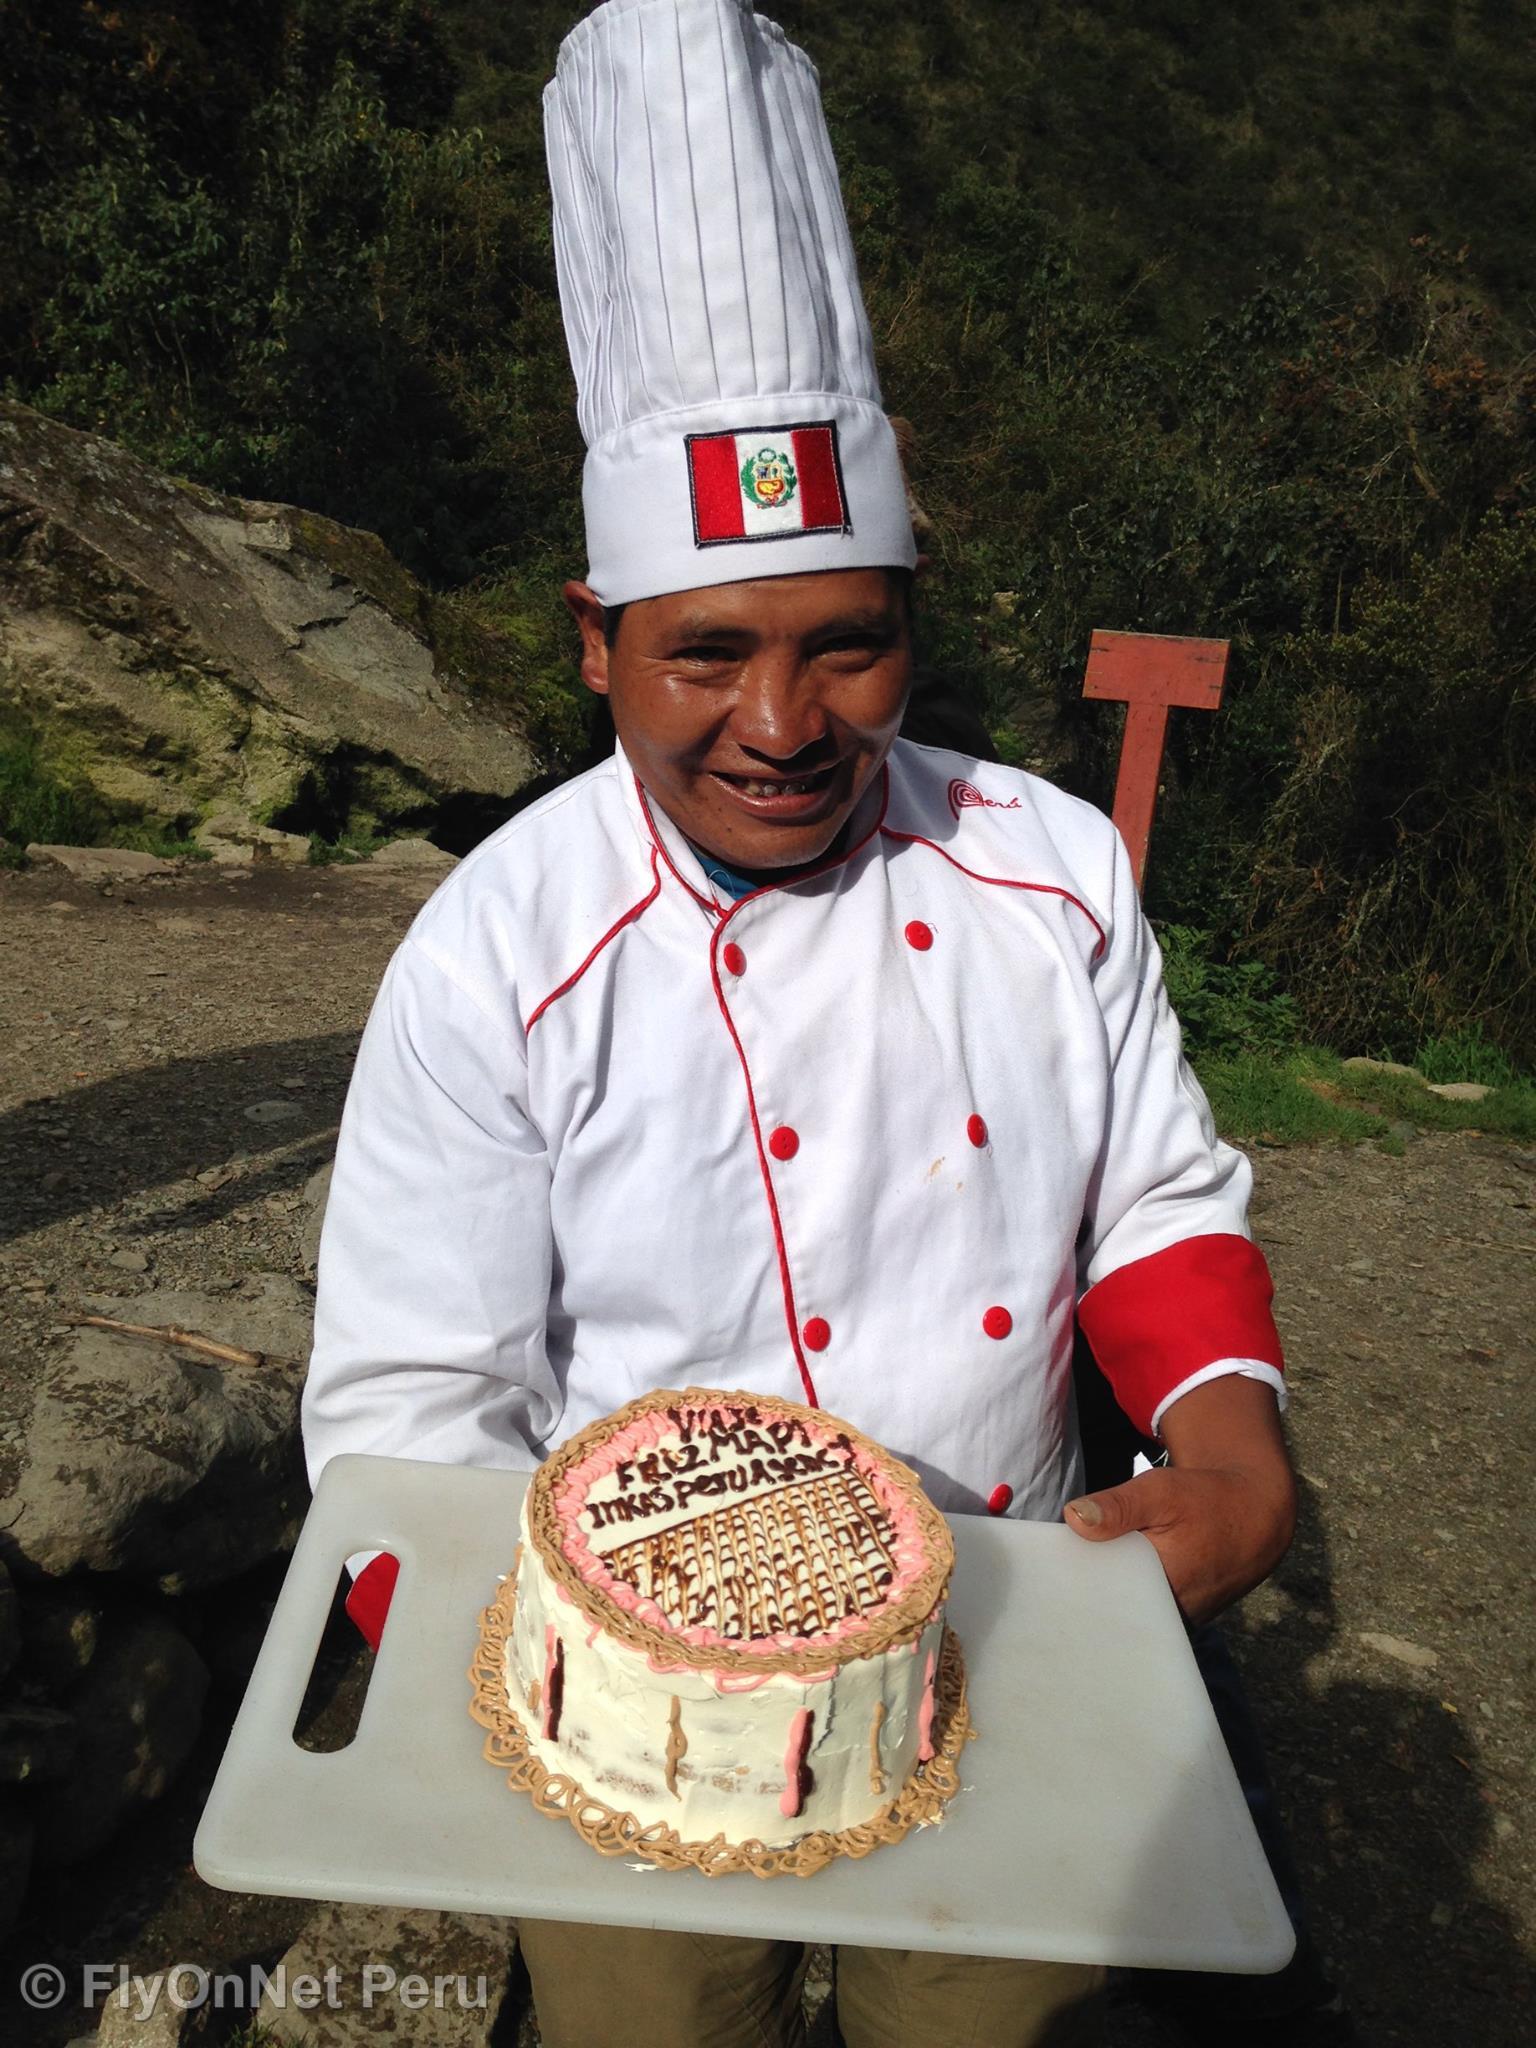 Álbum de fotos: Our cook baking a cake, Inca Trail